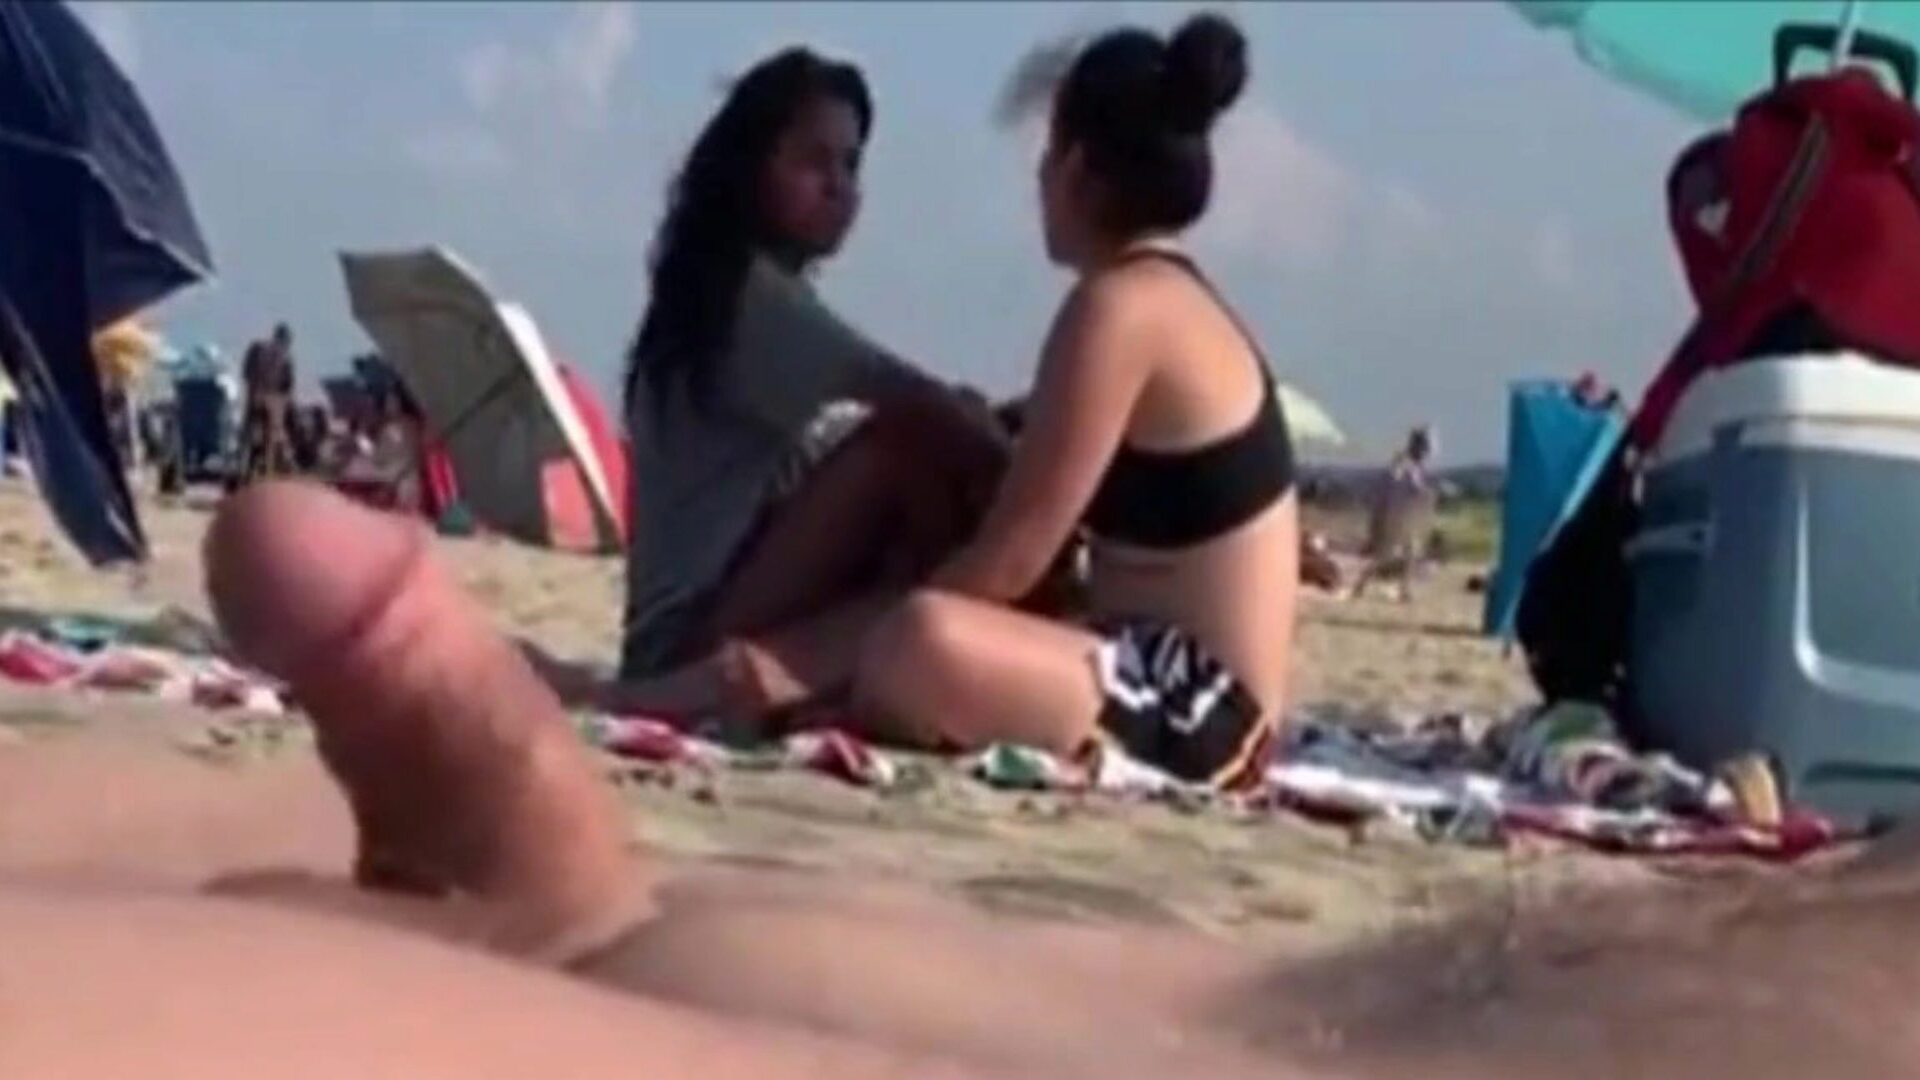 iki kız bir halk plajında ​​sertliğimi gözlemliyor, iki güzelim wang'ıma bakıp gitmelerine izin verdiler ..